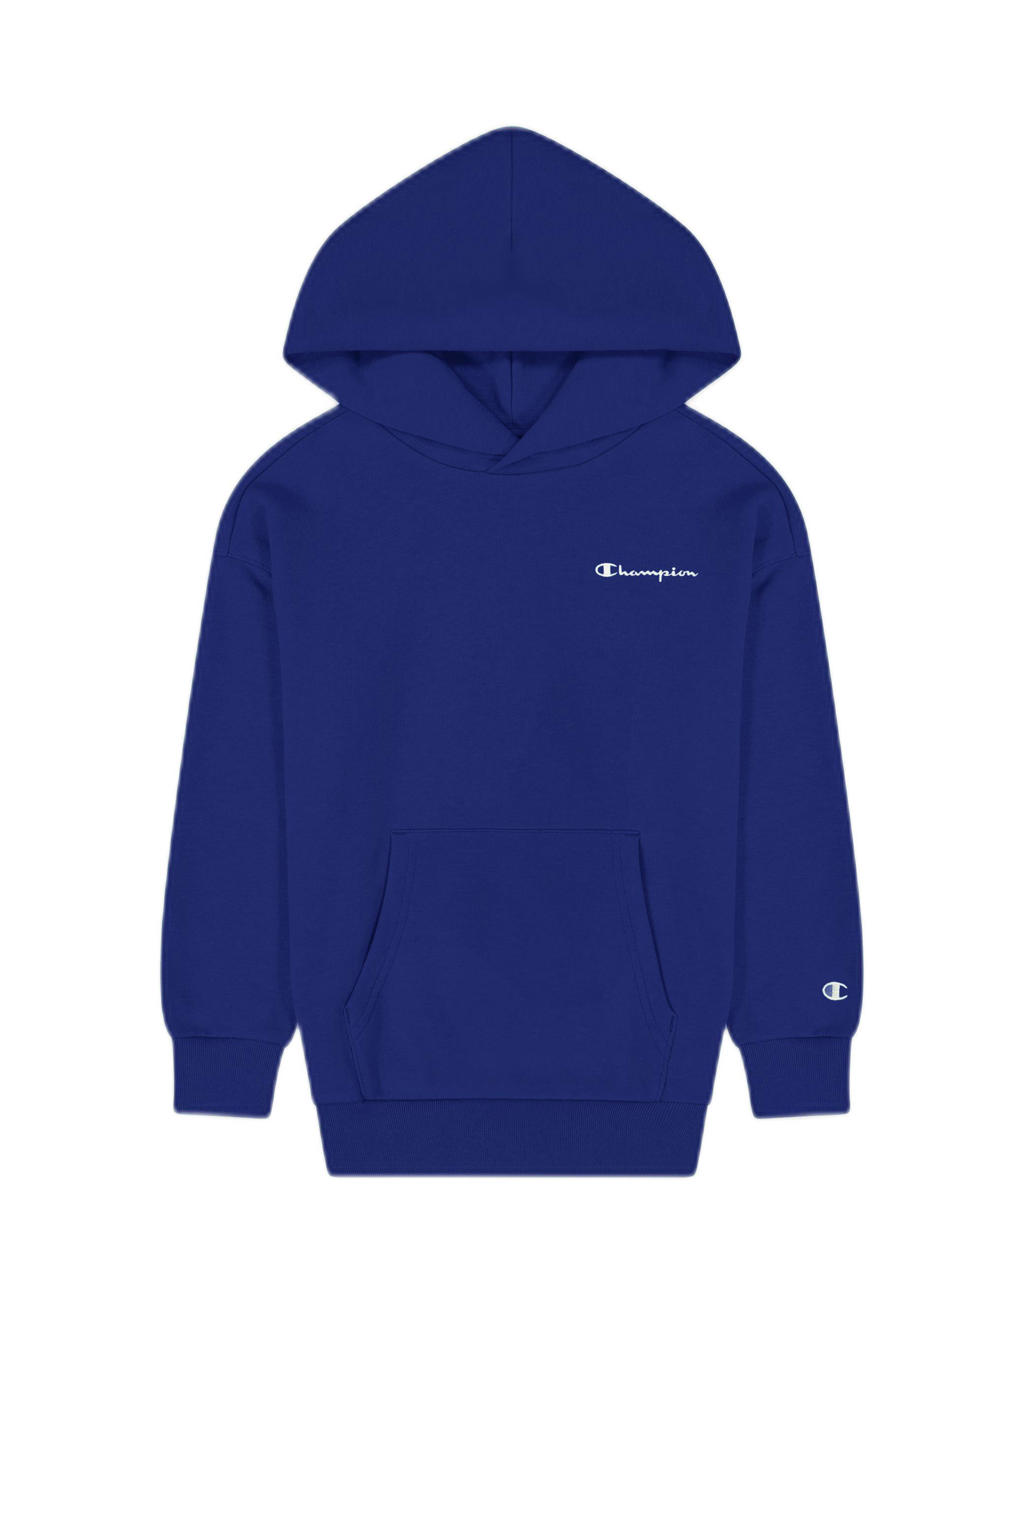 Paarse jongens Champion hoodie van sweat materiaal met logo dessin en lange mouwen